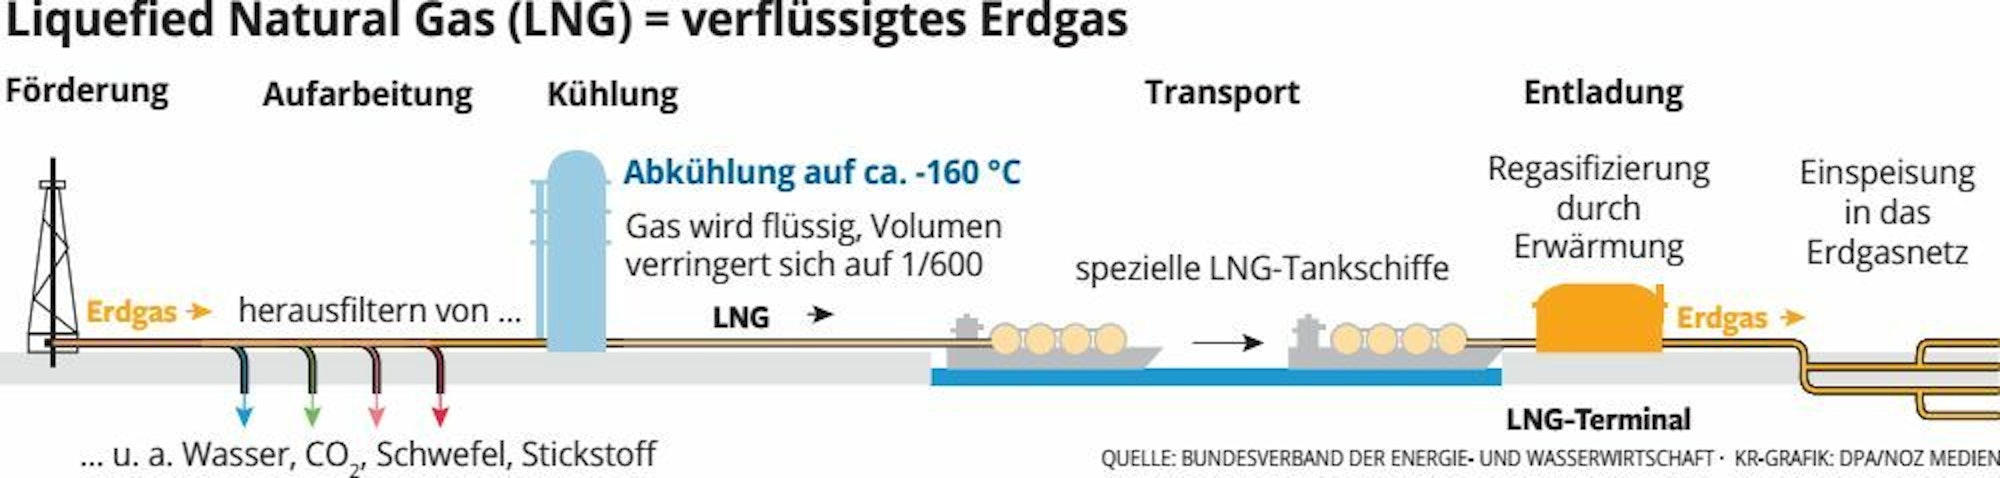 Der Verarbeitungsprozess von Erdgas zu LNG (verflüssigtes Erdgas).